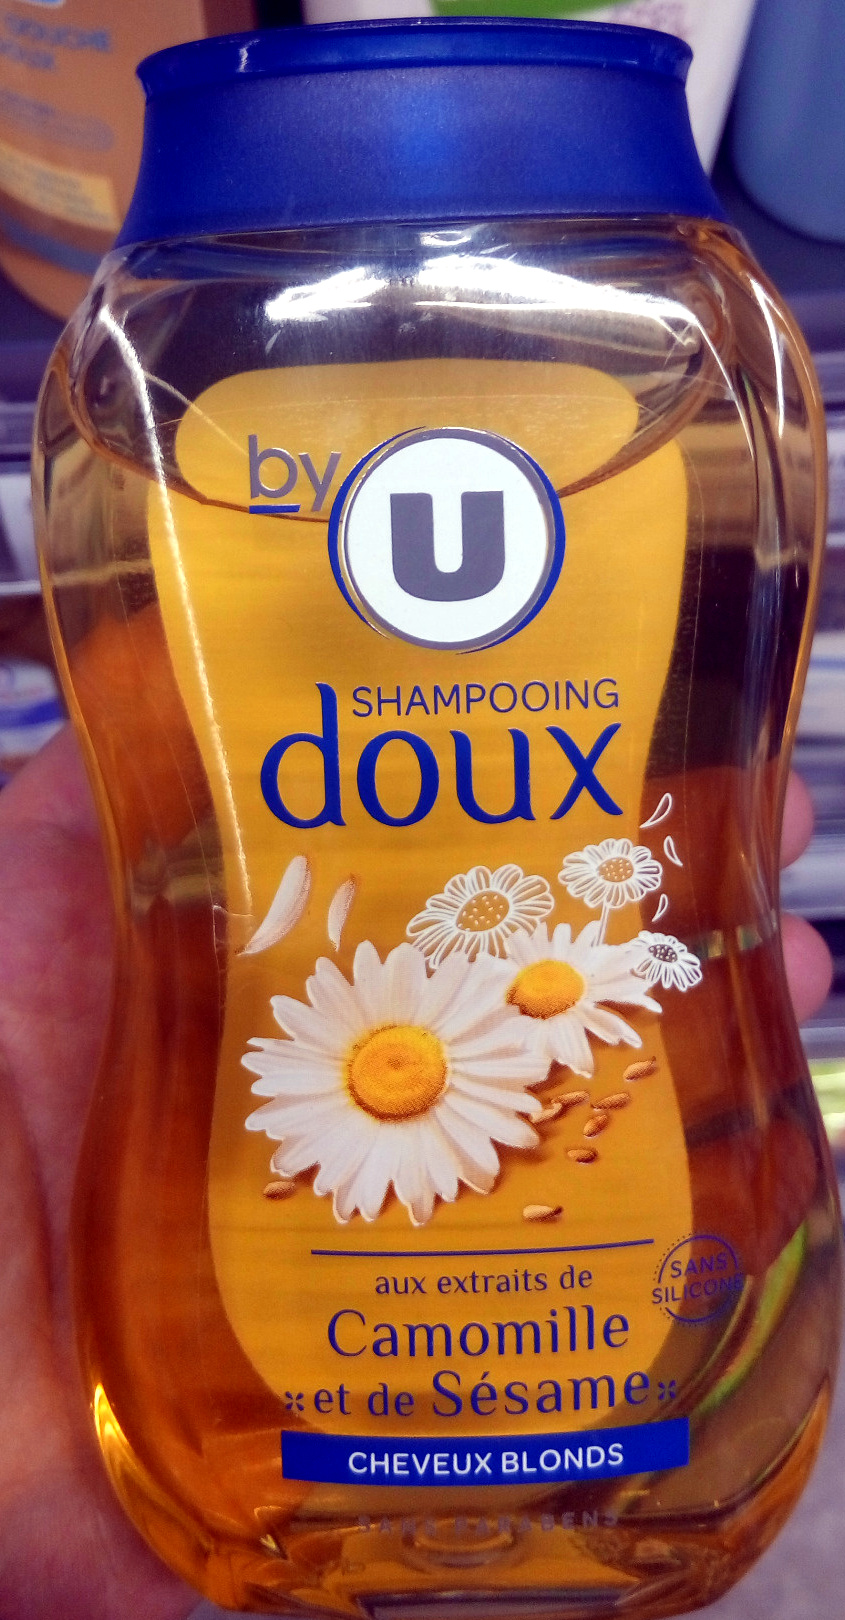 Shampooing doux aux extraits de camomille et de sésame Cheveux blonds - Product - fr